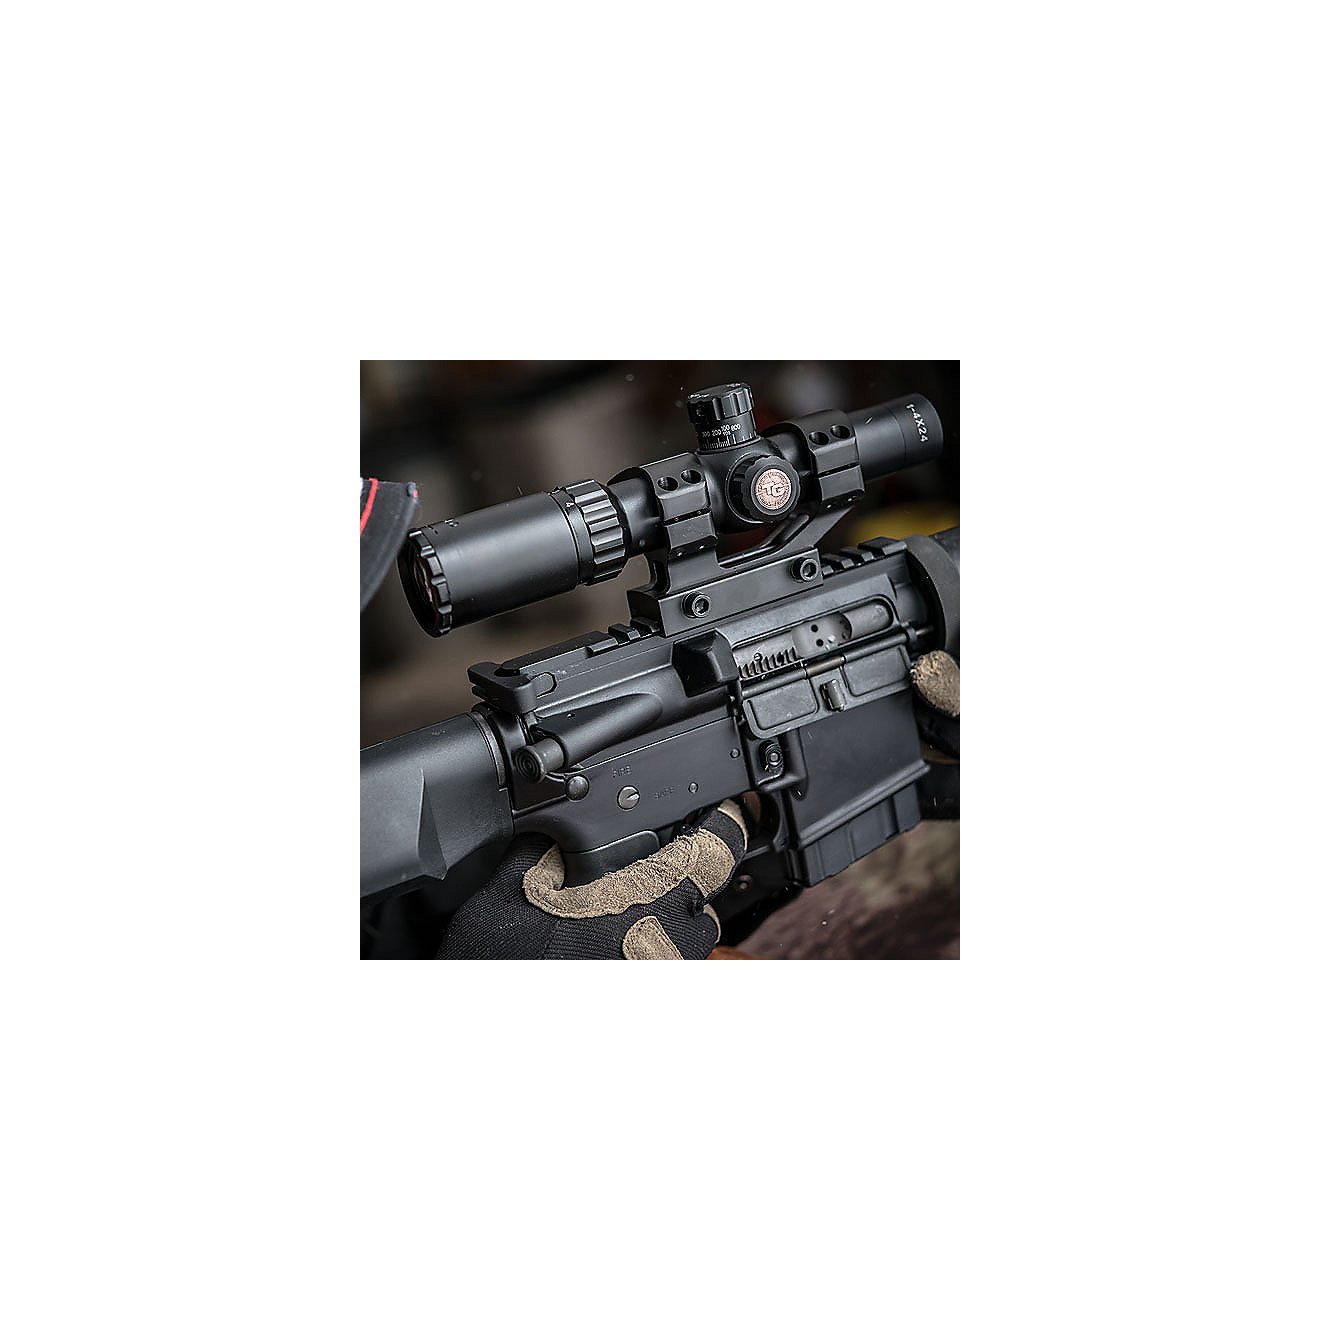 Truglo TRU-BRITE 30 Series 1 - 4 x 24 Riflescope                                                                                 - view number 4